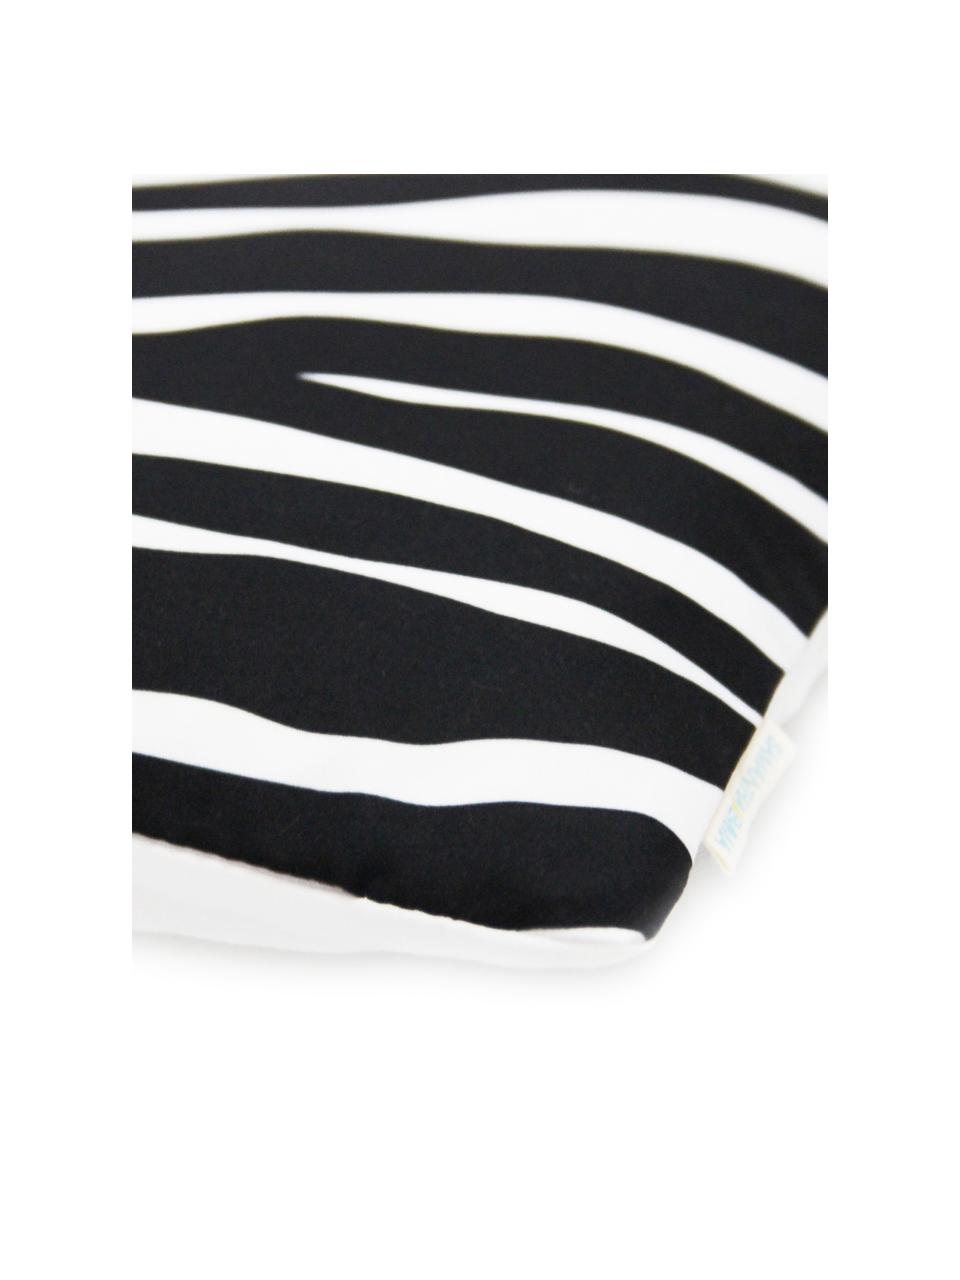 Kissenhülle Pattern mit Zebra Print in Schwarz/Weiß, 100% Polyester, Weiß, Schwarz, 45 x 45 cm